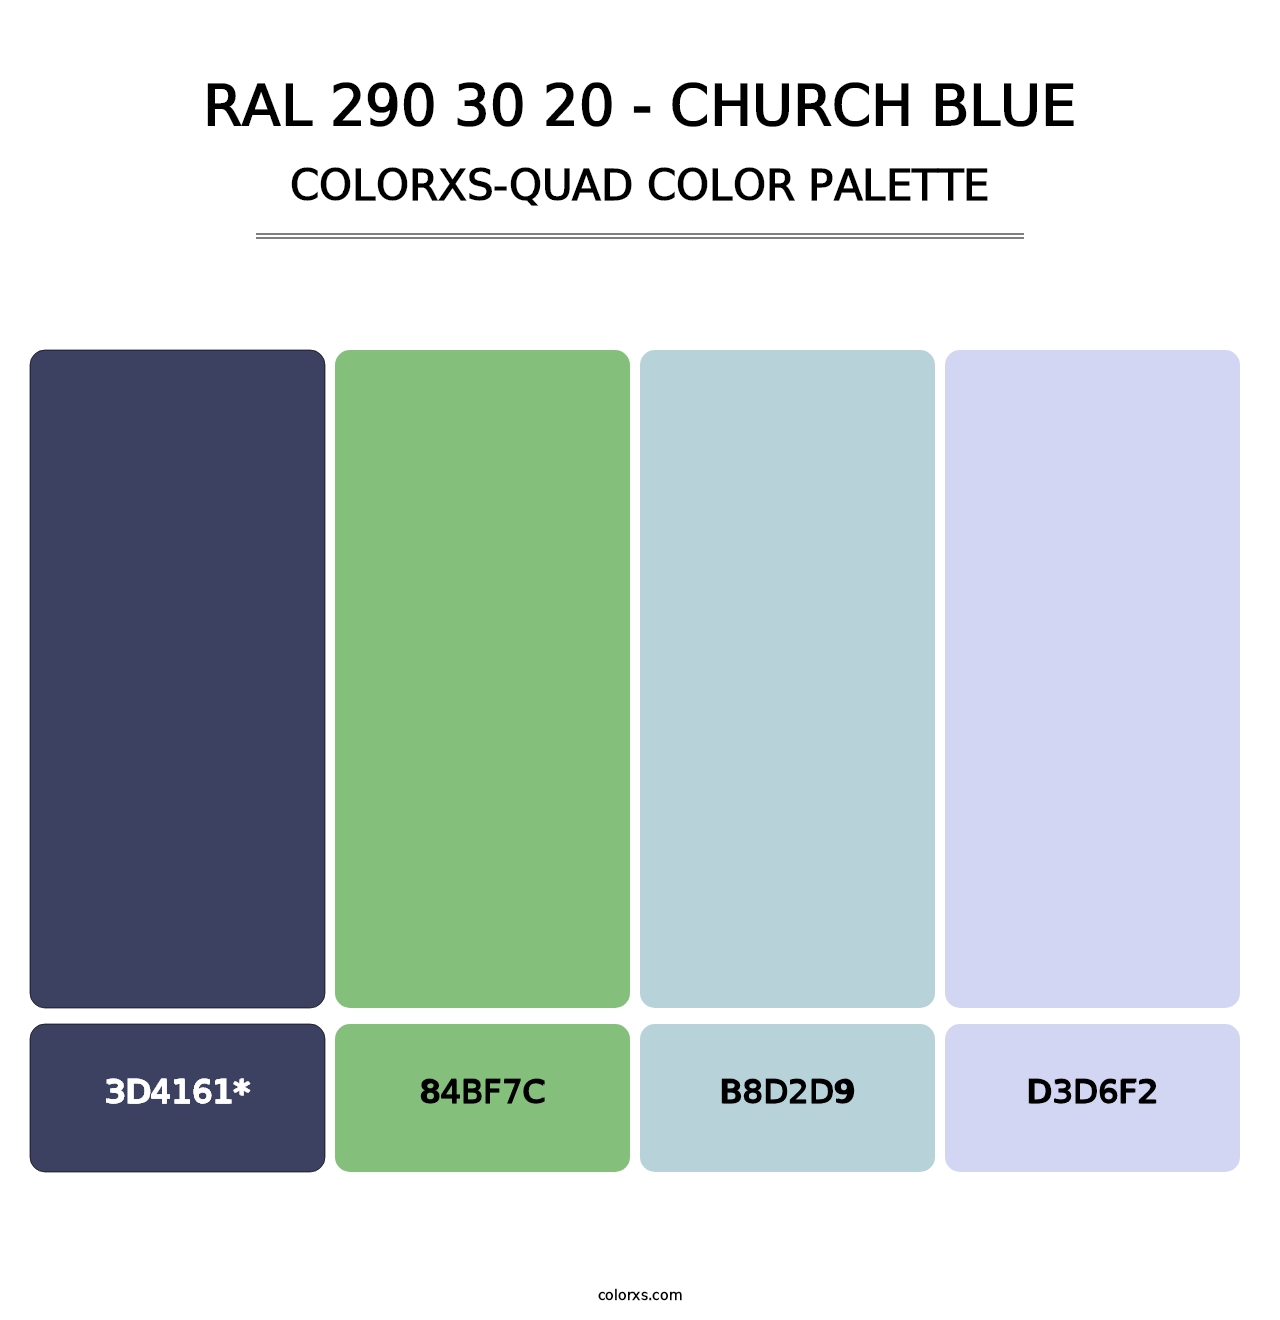 RAL 290 30 20 - Church Blue - Colorxs Quad Palette